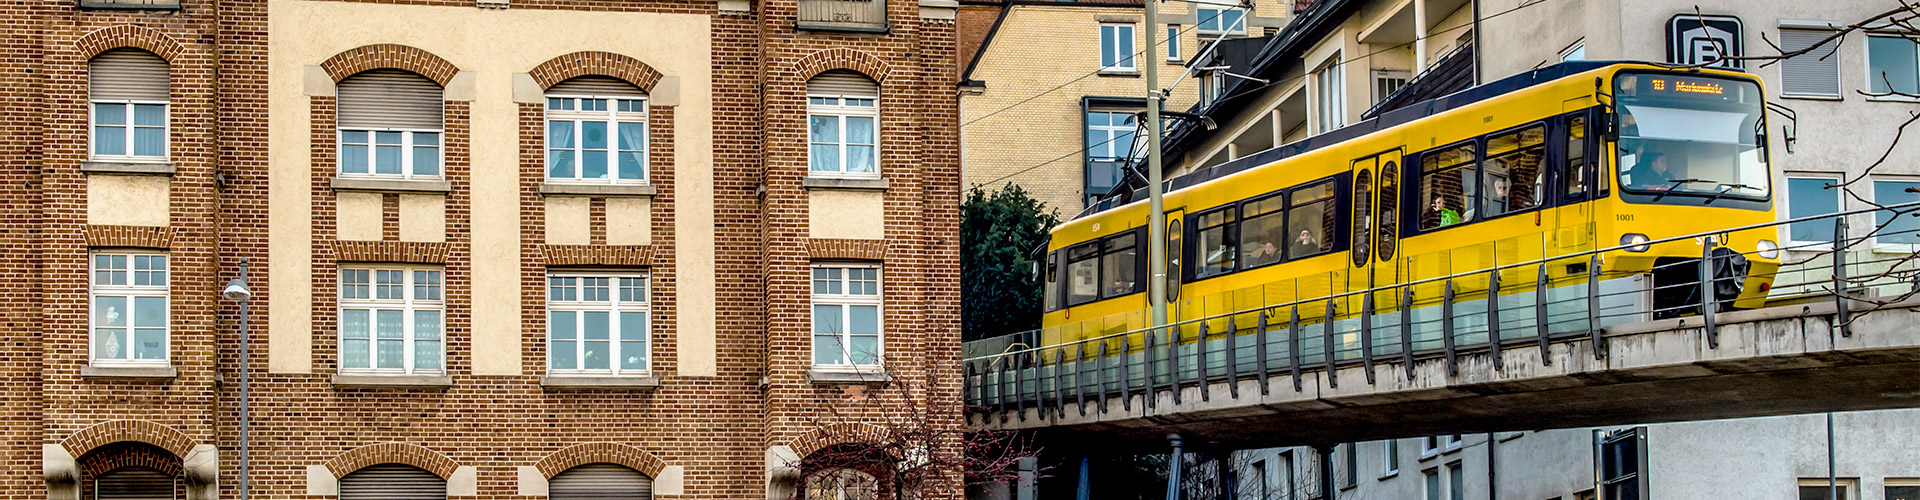 Zahnradbahn auf der Brücke nahe des Marienplatzes